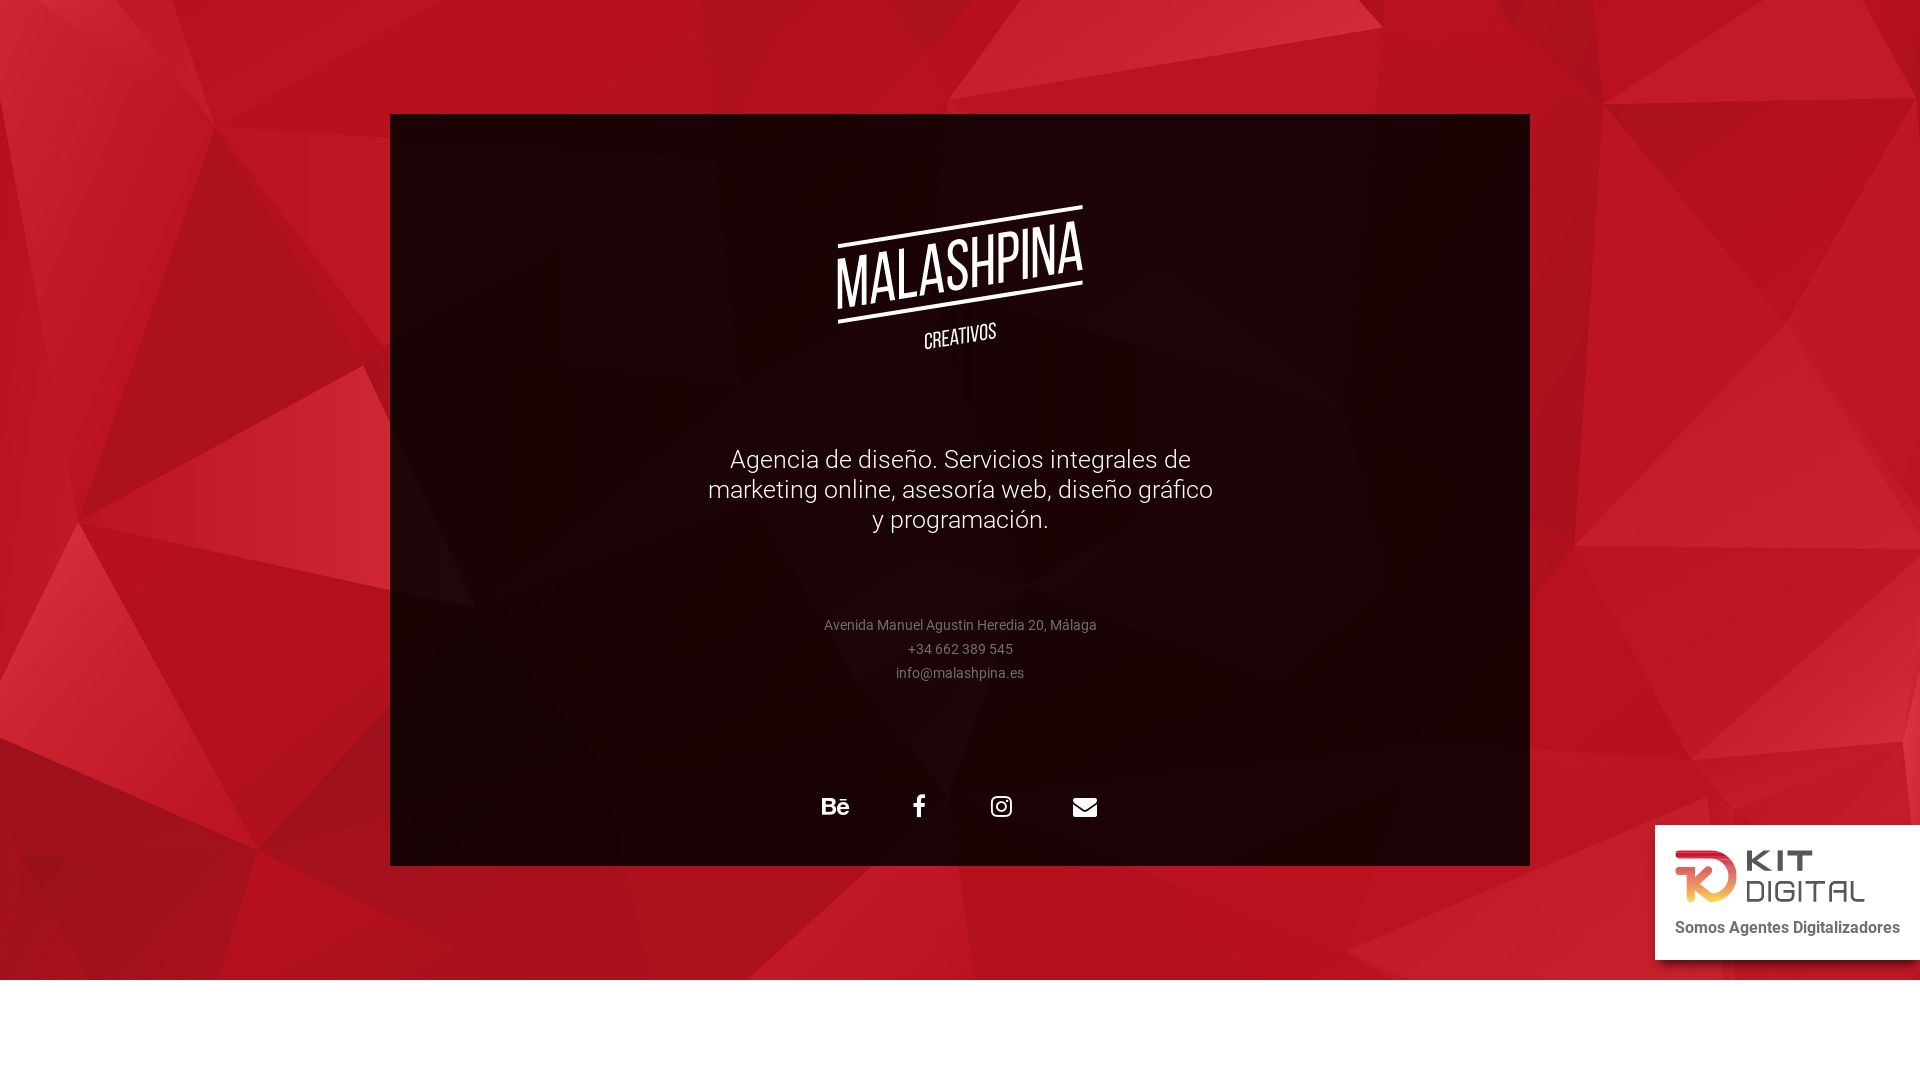 网站状态 malashpina.es 是  在线的